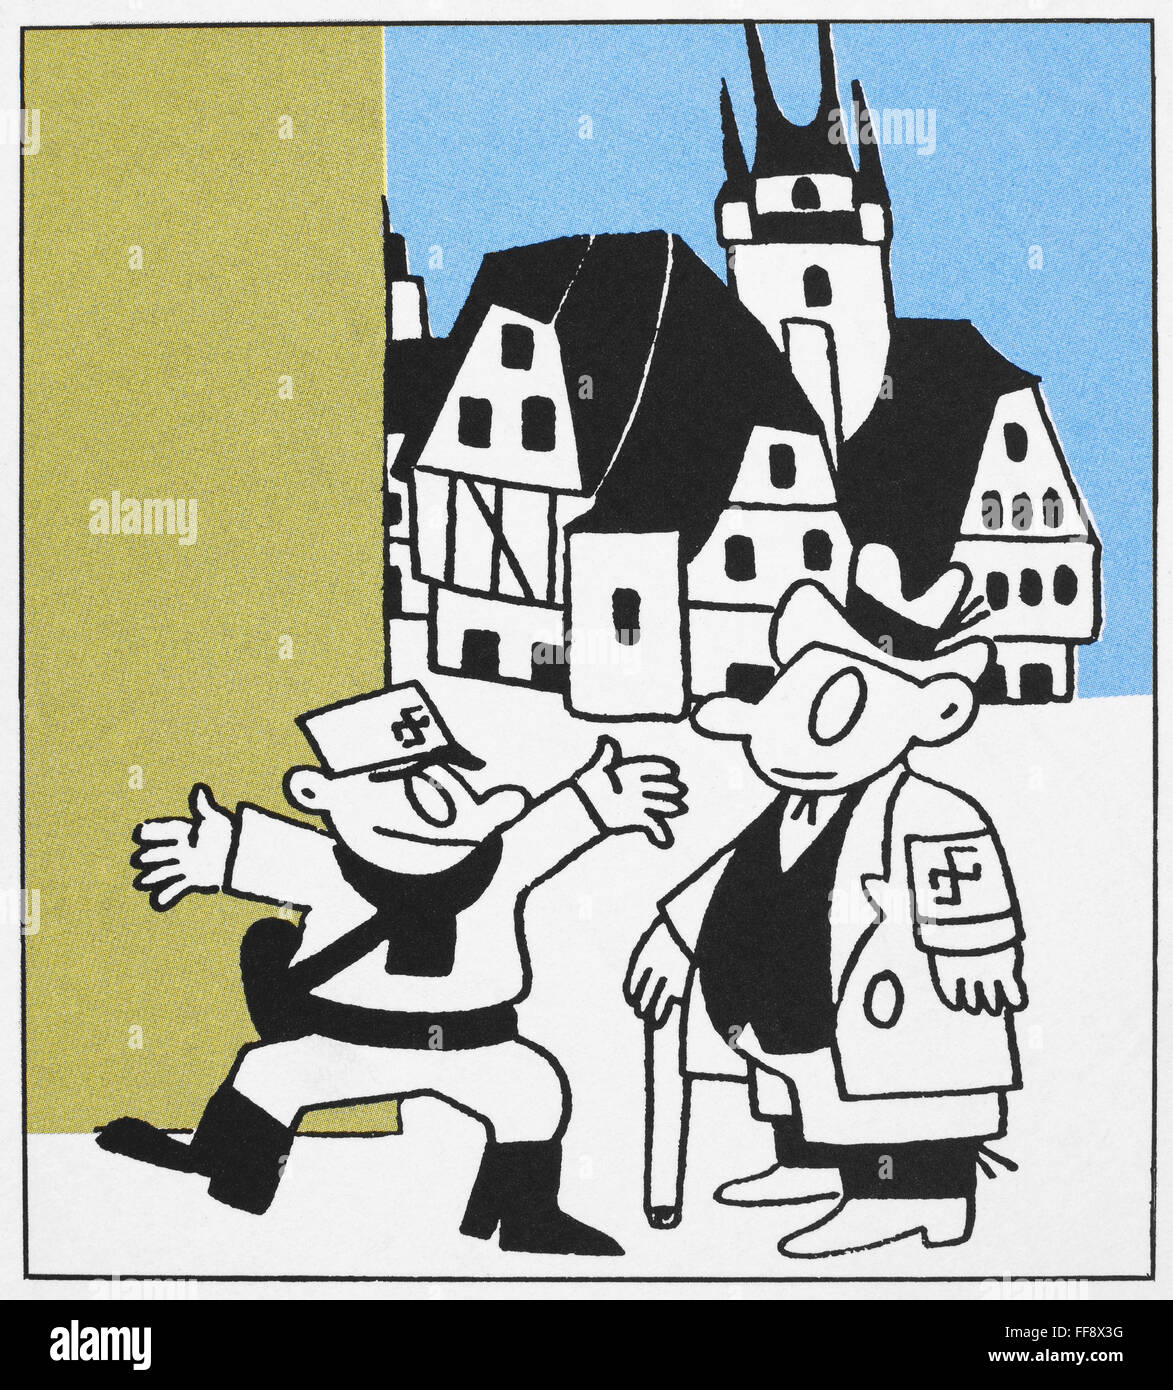 Caricatura nazi, 1933. /N'Qué? Has matado sólo 33 judíos y se llama a sí mismo un miembro del Partido Nazi de Hitler?' de dibujos animados francesa de 1933, por H. Monier. Foto de stock